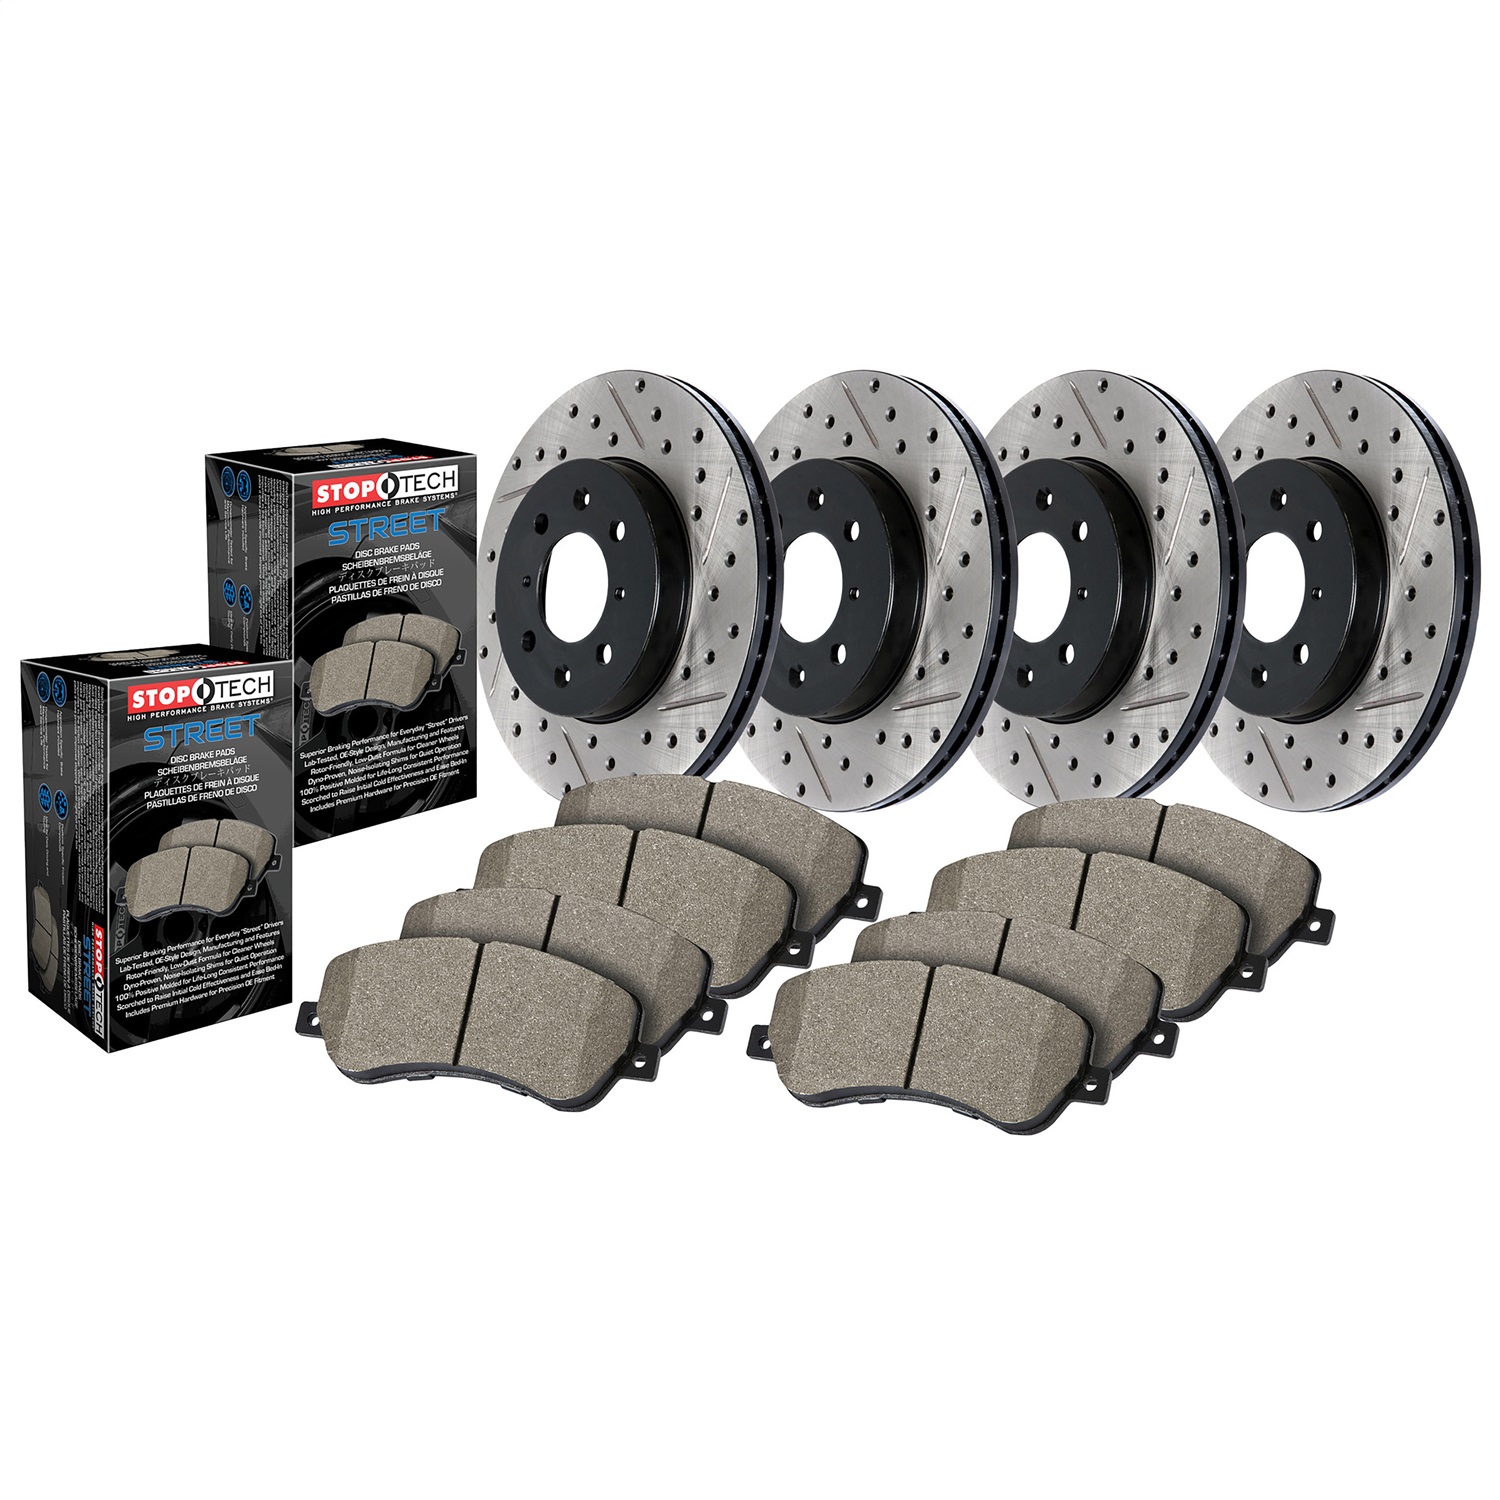 StopTech 935.47021 Disc Brake Upgrade Kit